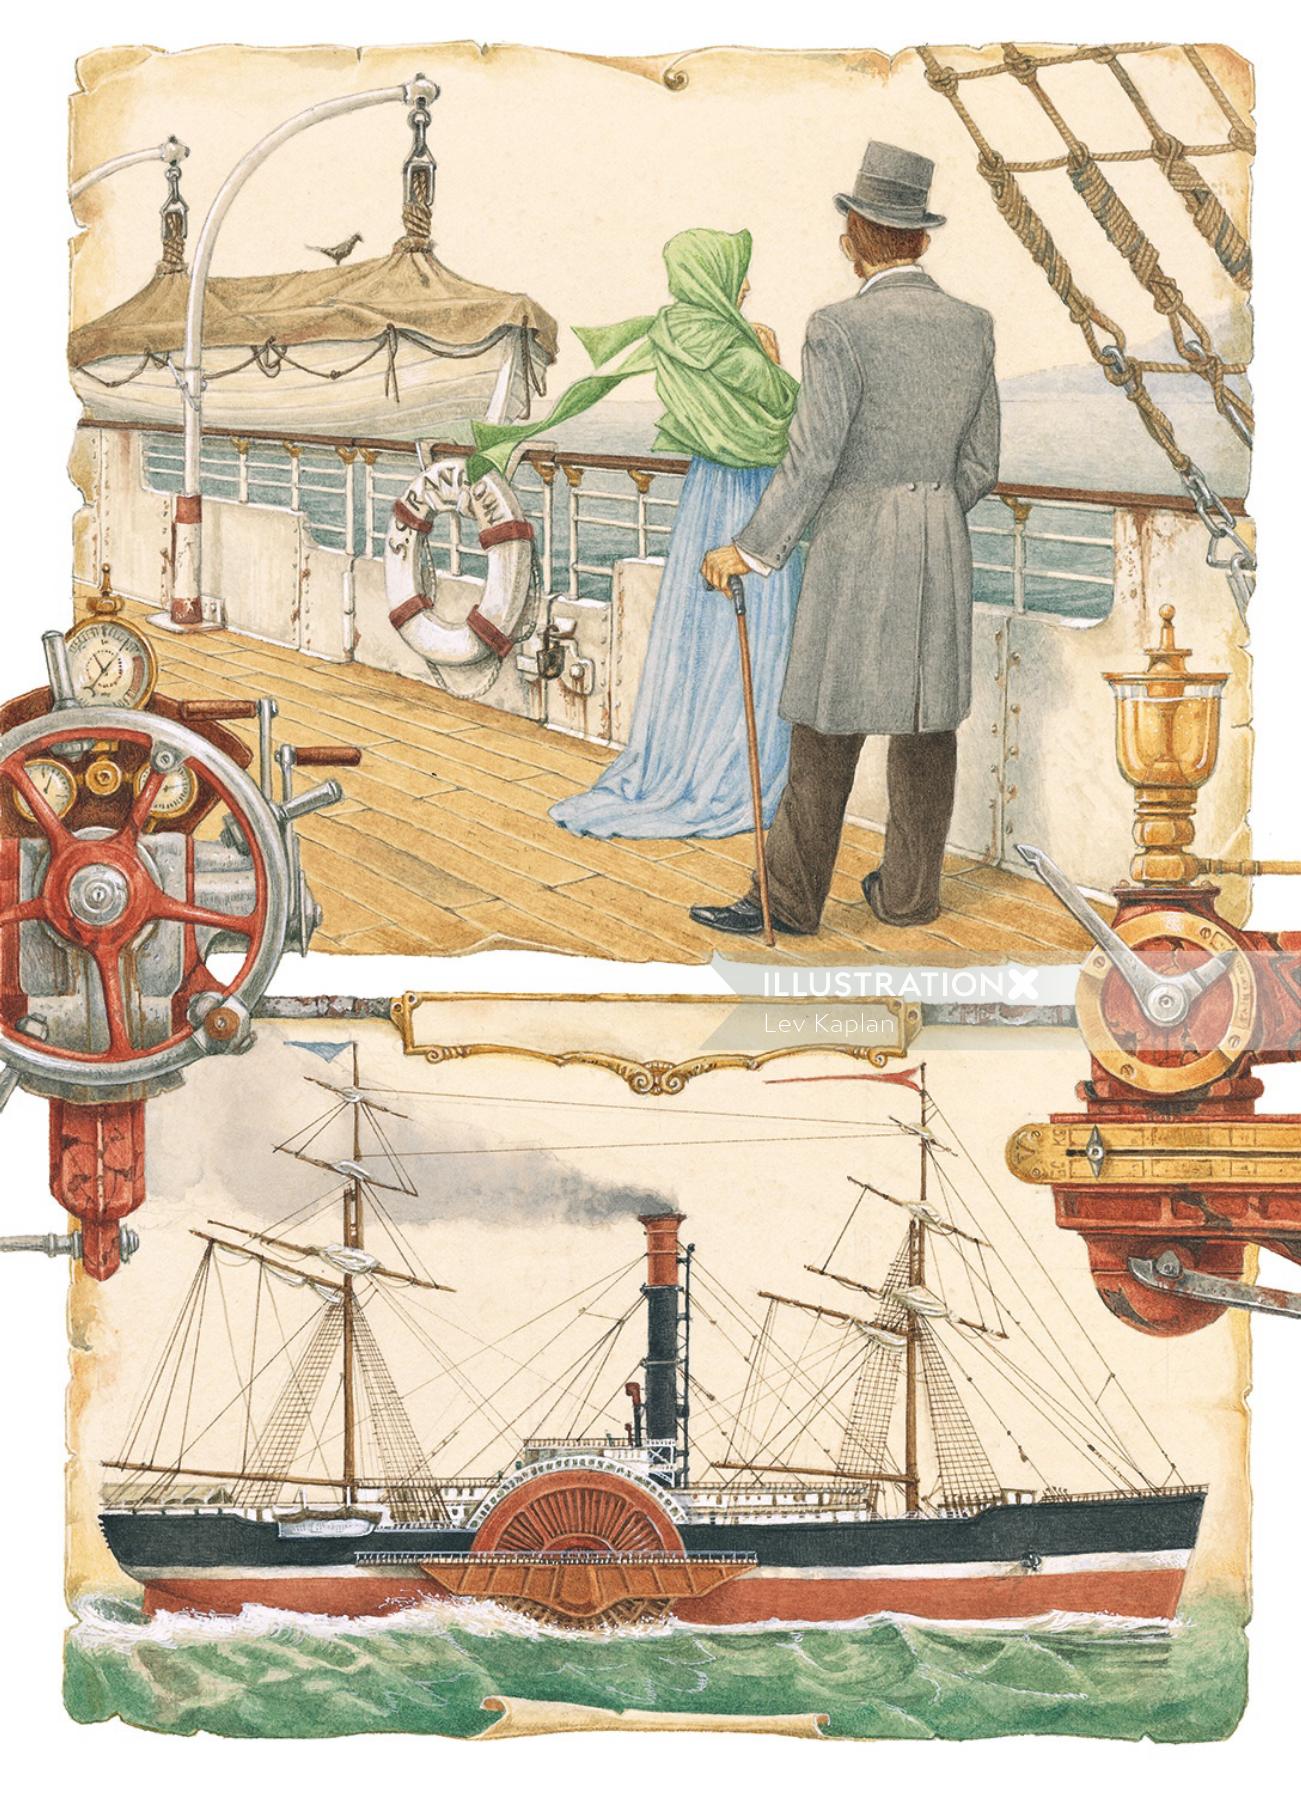 Man and woman at ship